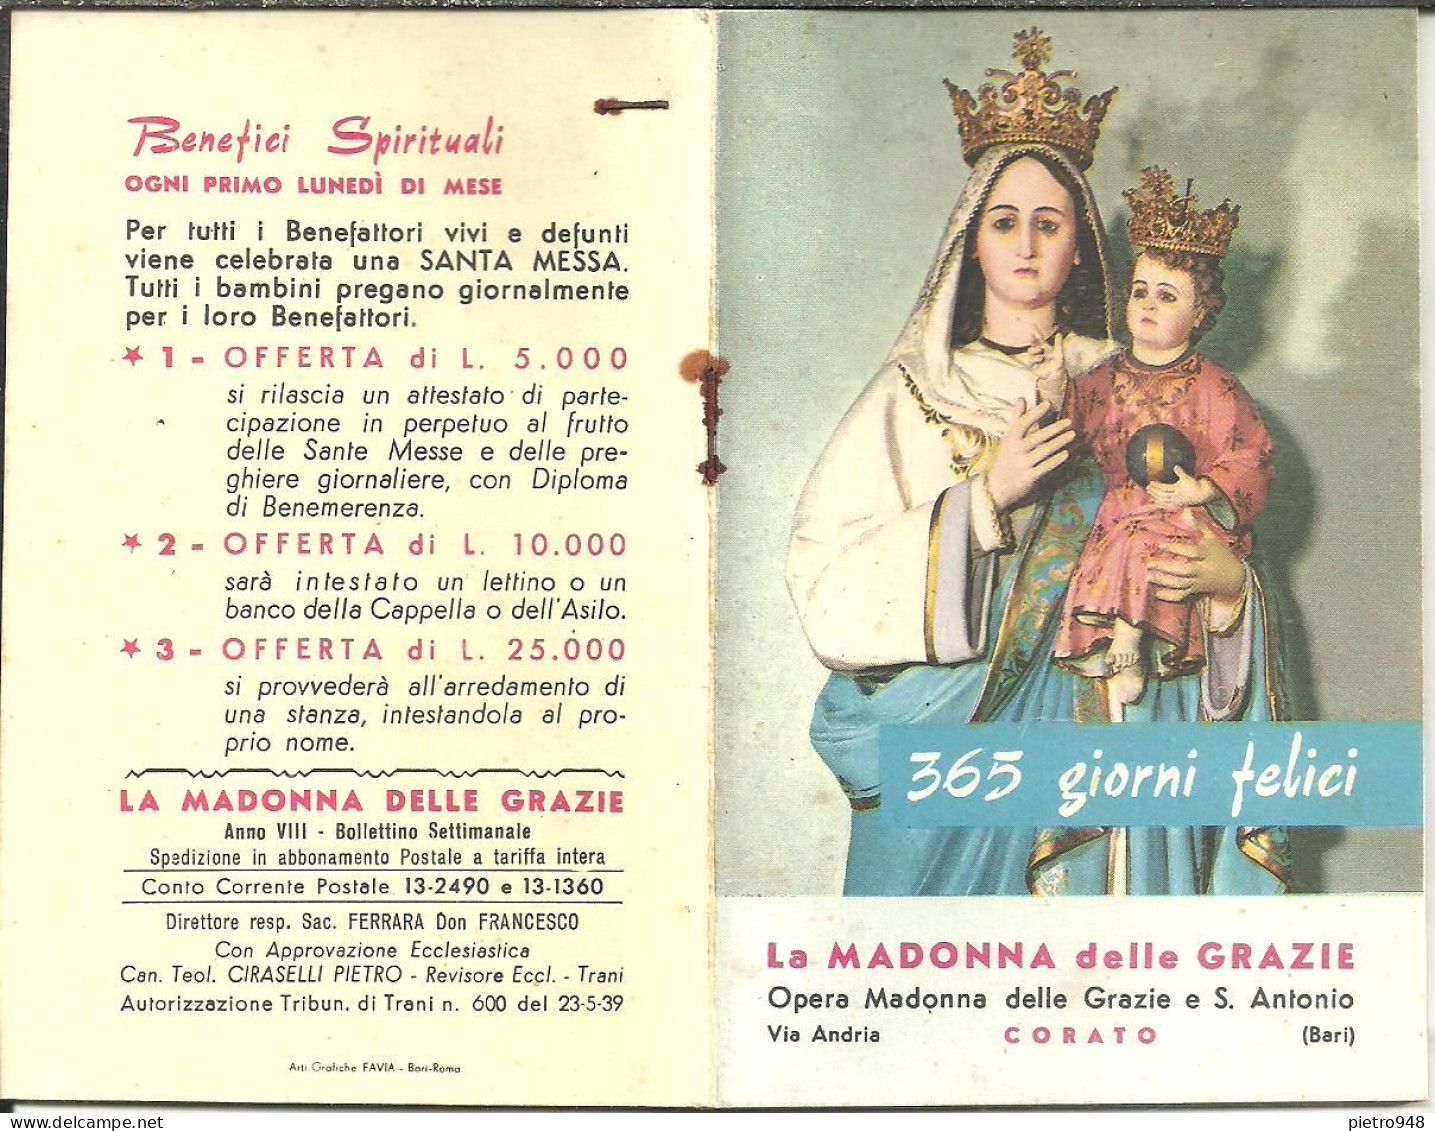 Libro (Libretto) Religioso "Opera Madonna Delle Grazie E Sant'Antonio" Corato (Bari), Agendina 1966 - Religion/ Spirituality